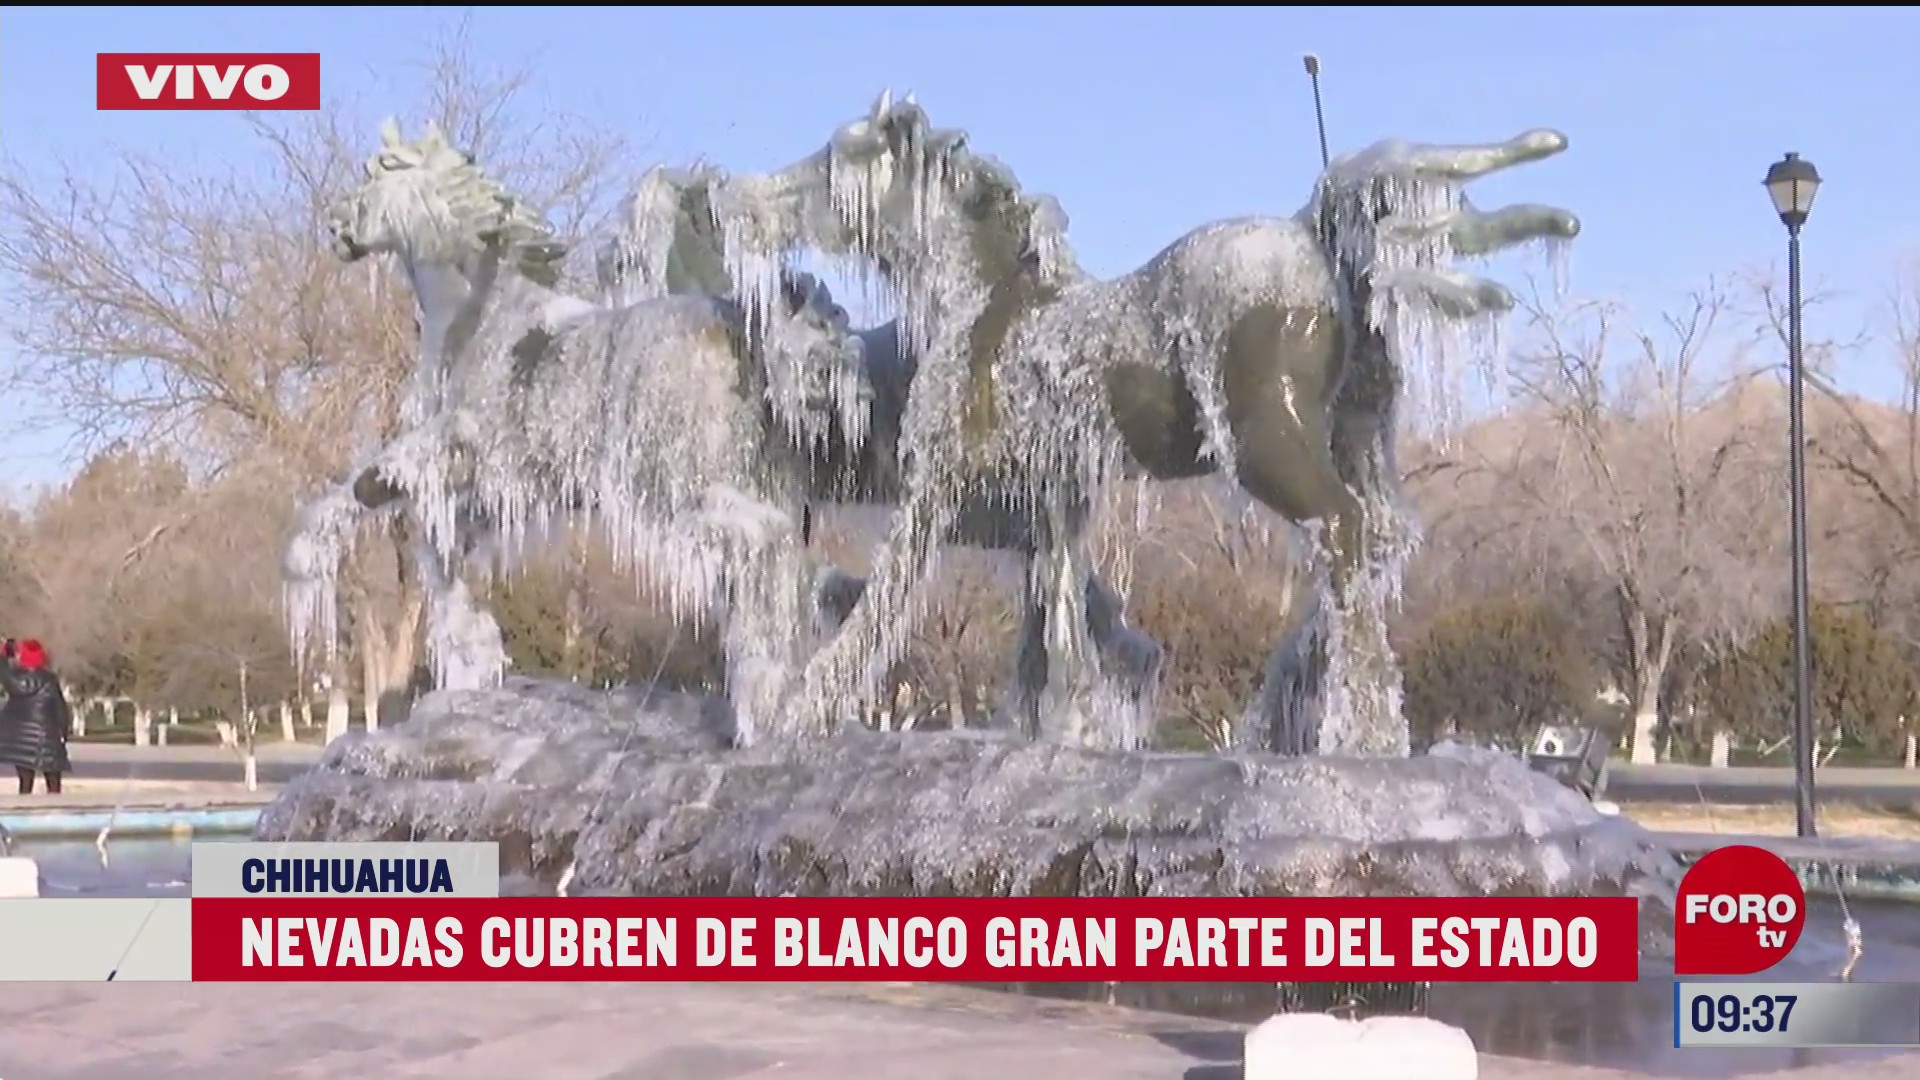 nevadas cubren de blanco gran parte del estado de chihuahua